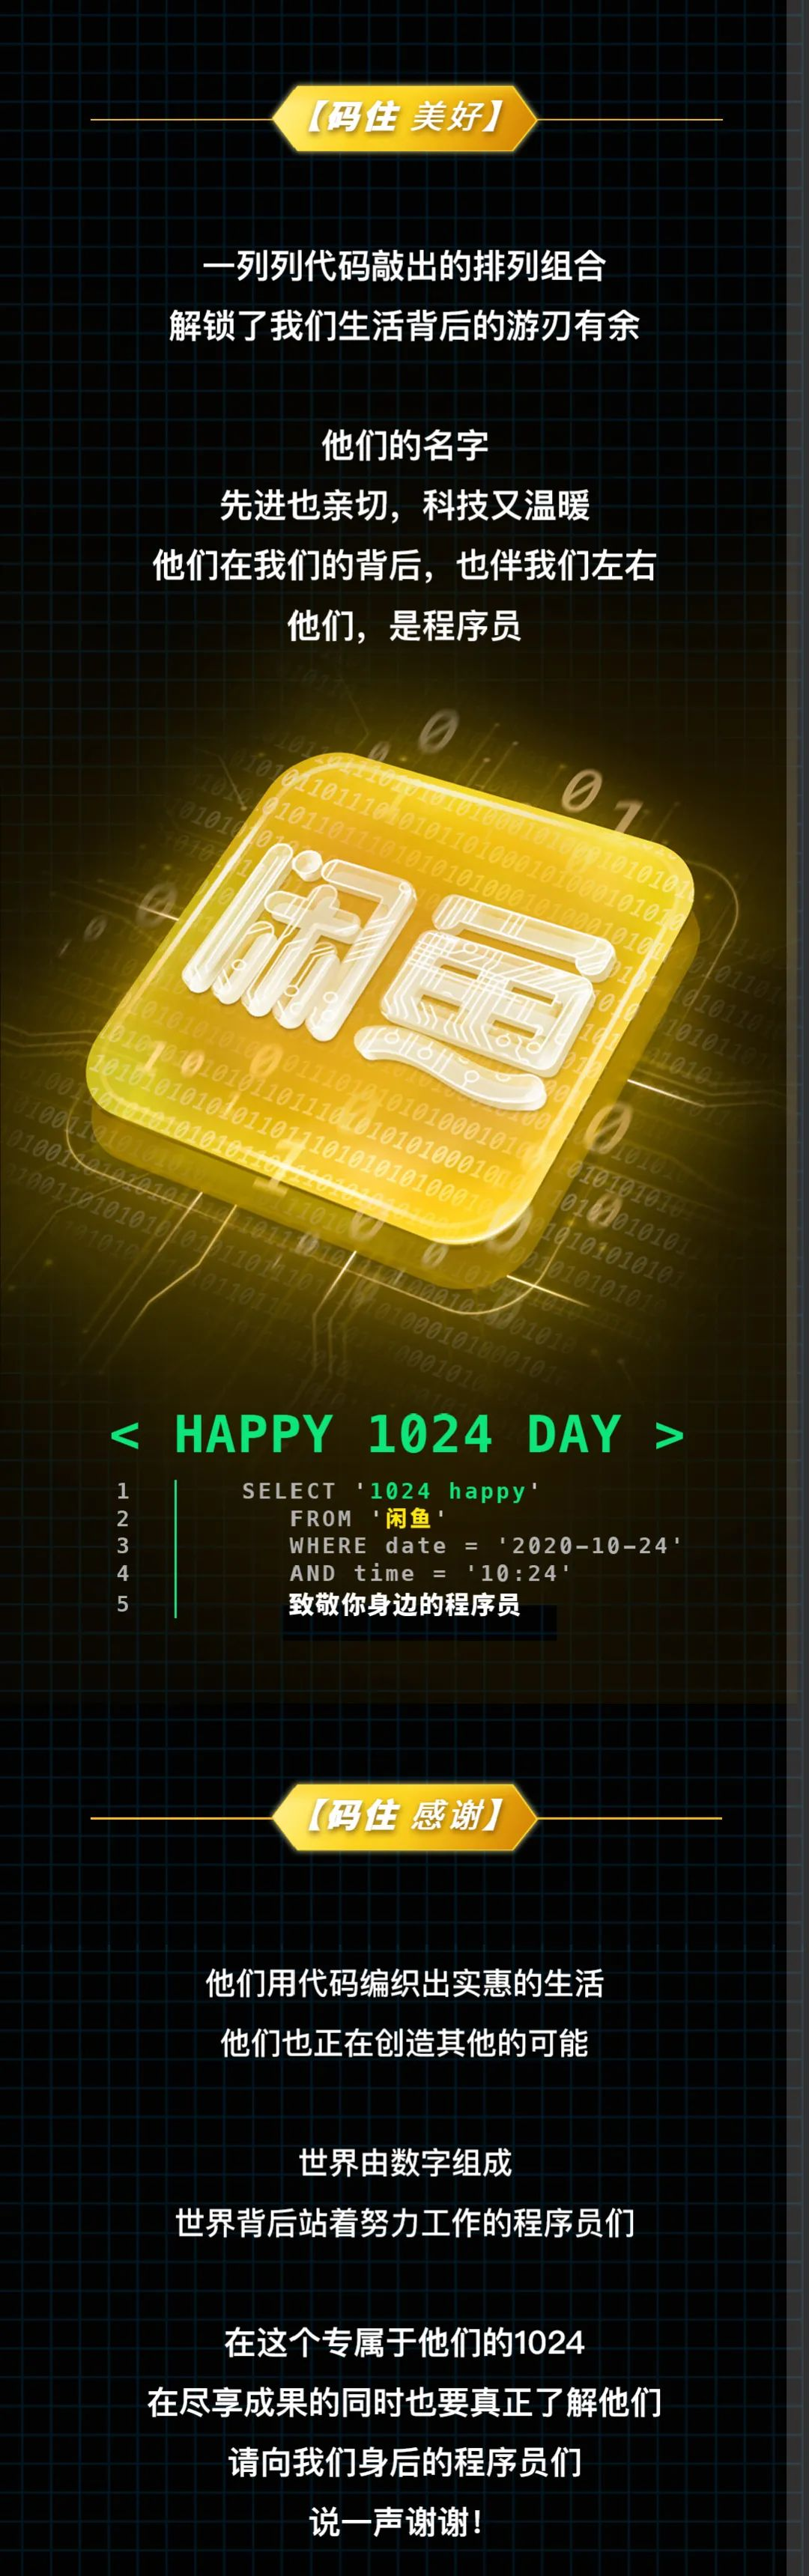 HAPPY 1024 DAY